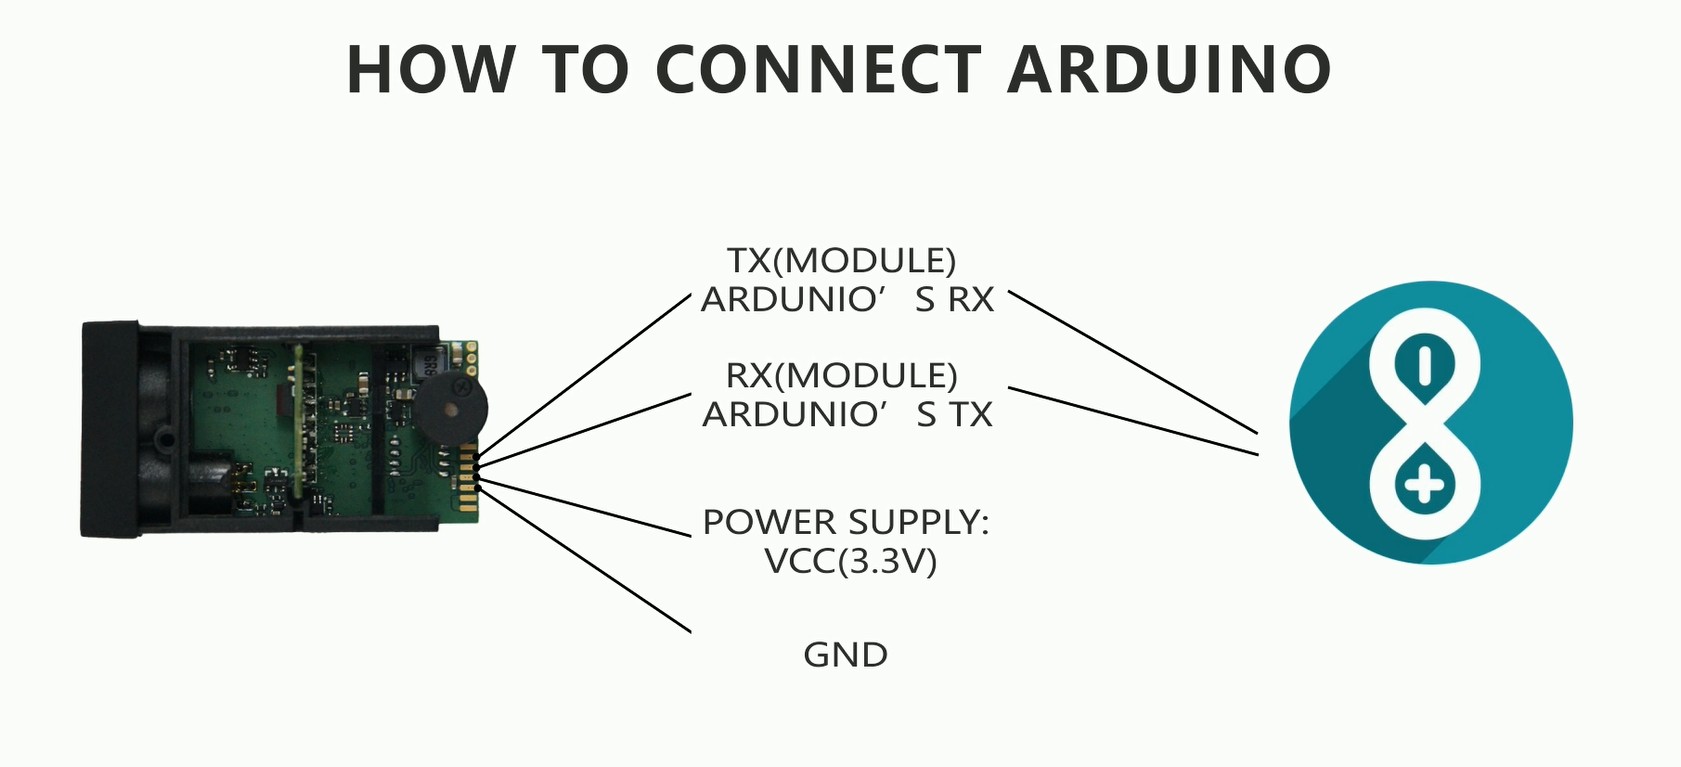 Paano ikonekta ang Arduino na may 50m USB distansya sa pagsukat ng sensor